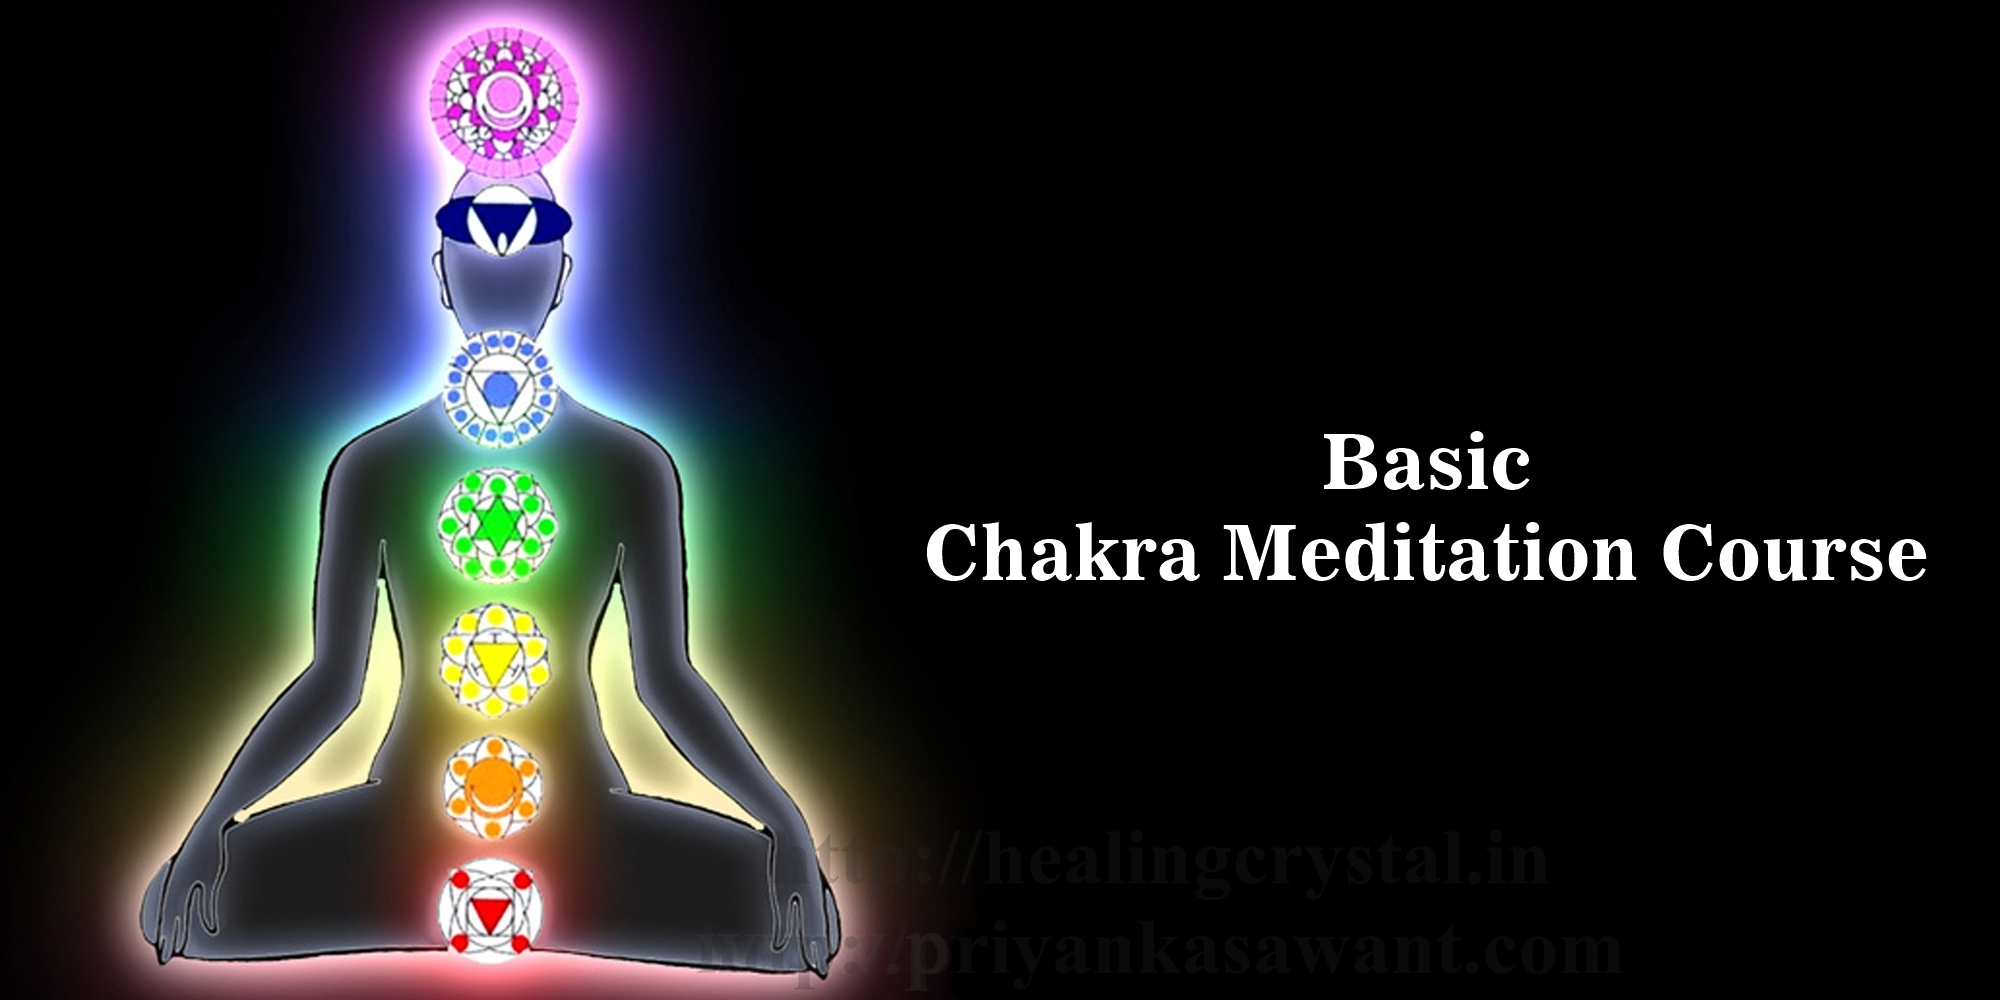 Basic Chakra Meditation Course